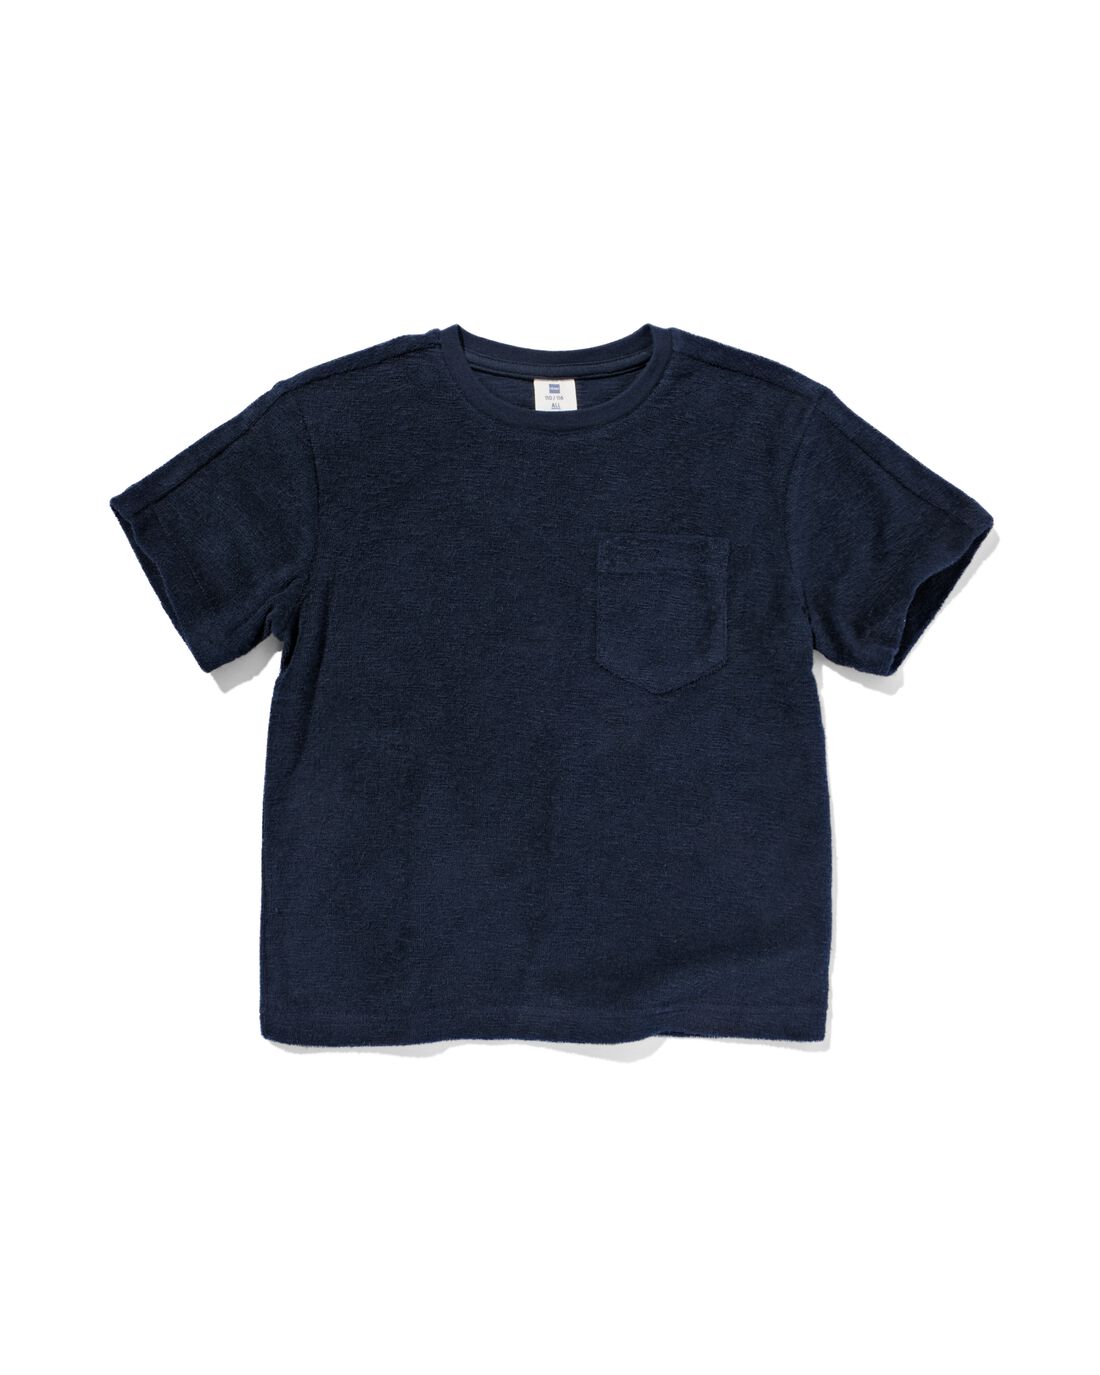 HEMA Kinder T-shirt Donkerblauw (donkerblauw)